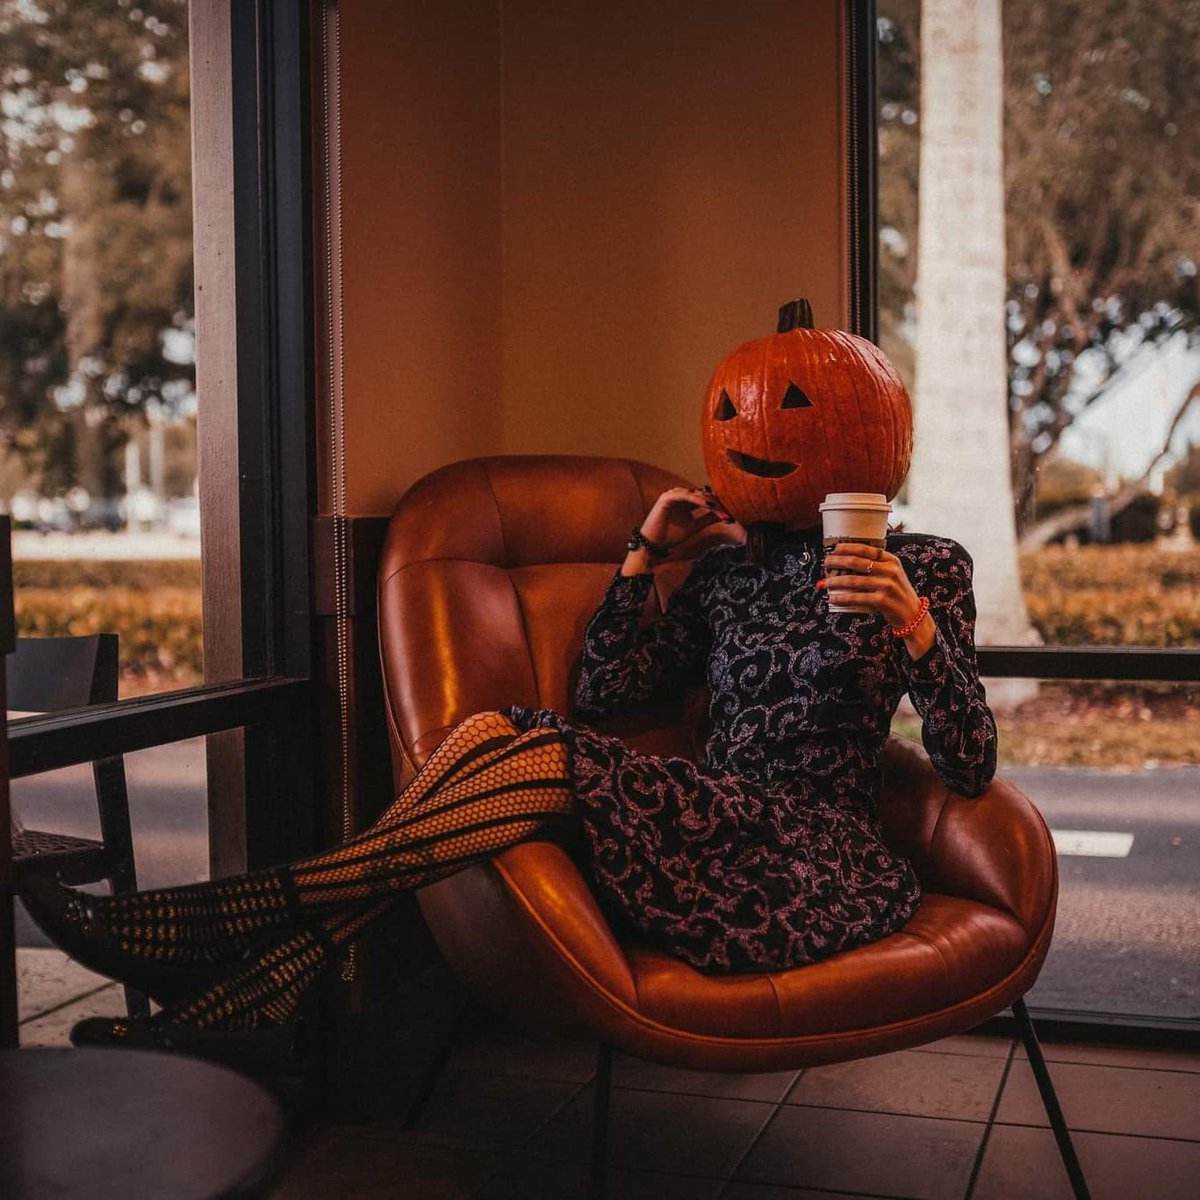 Pumpkin head adventures 🎃 